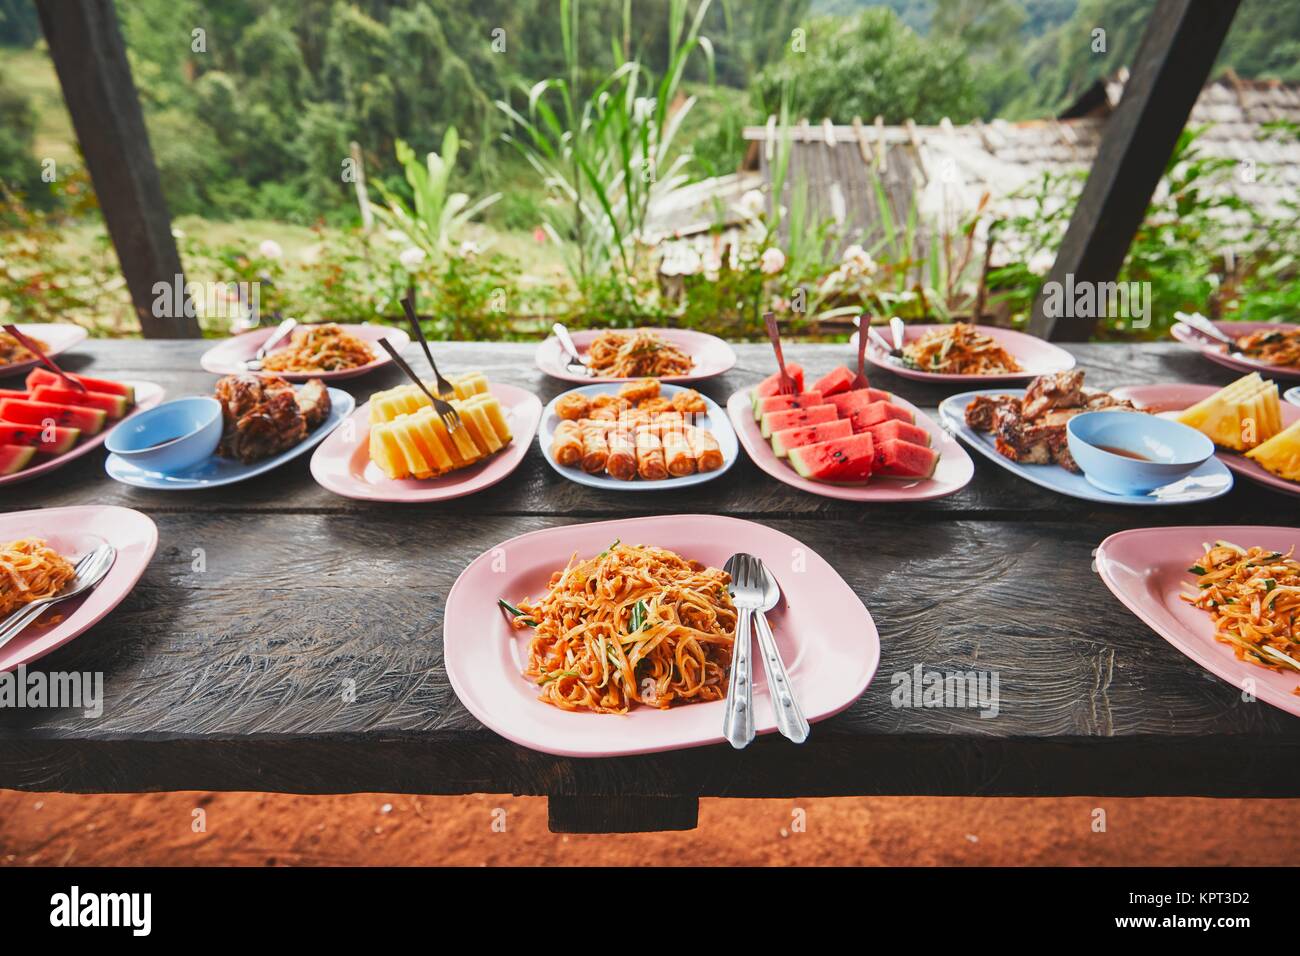 Le déjeuner au milieu de la jungle. La table pleine d'aliments et de fruits. Traditioal Pad Thaï, rouleaux de printemps, melon et ananas. La province de Chiang Mai, Th Banque D'Images